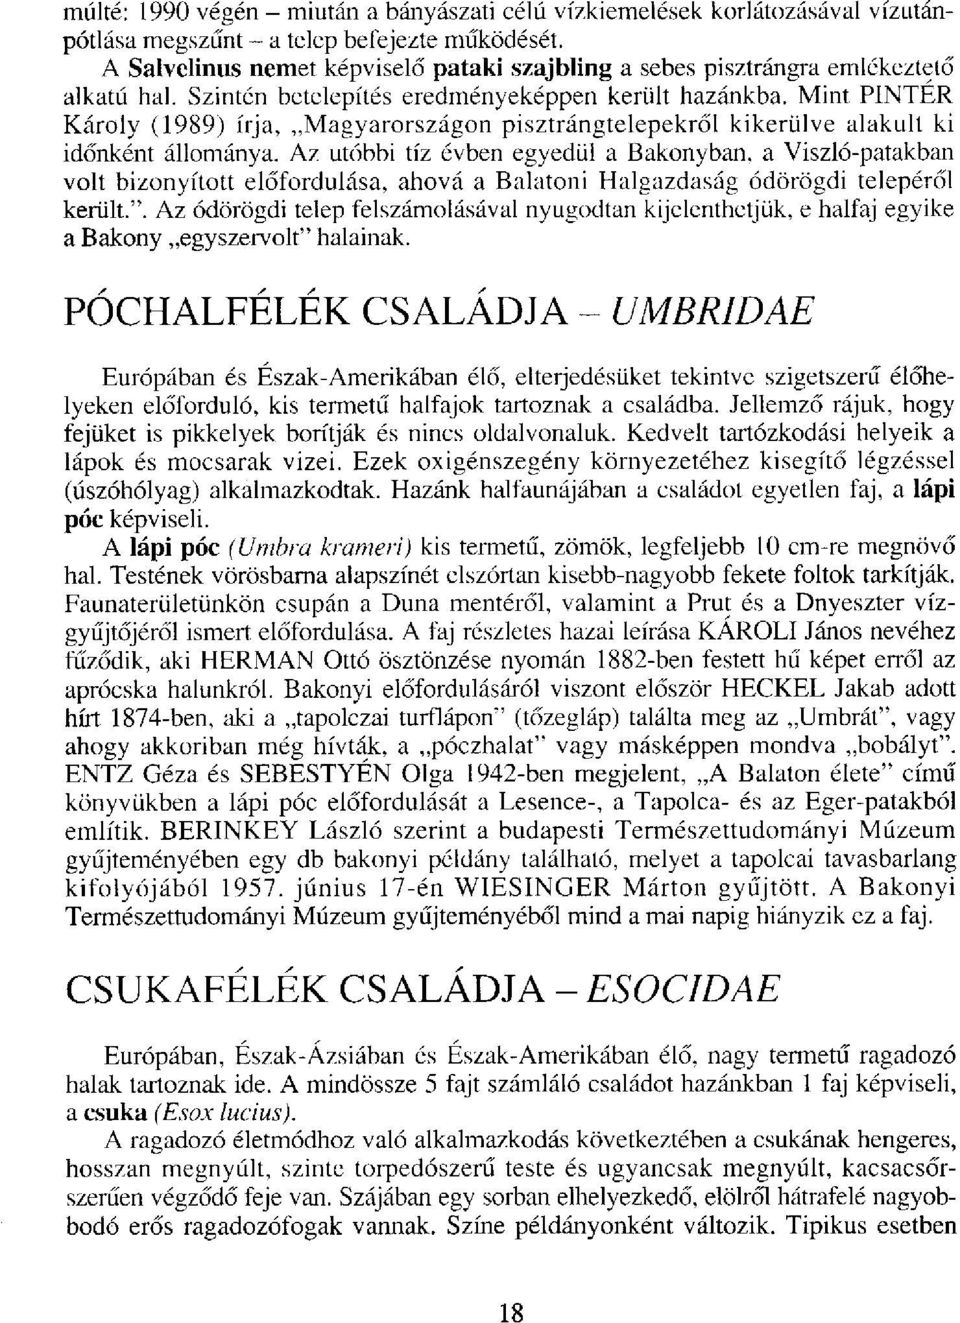 Mint PINTÉR Károly (1989) írja, Magyarországon pisztrángtelepekről kikerülve alakult ki időnként állománya.